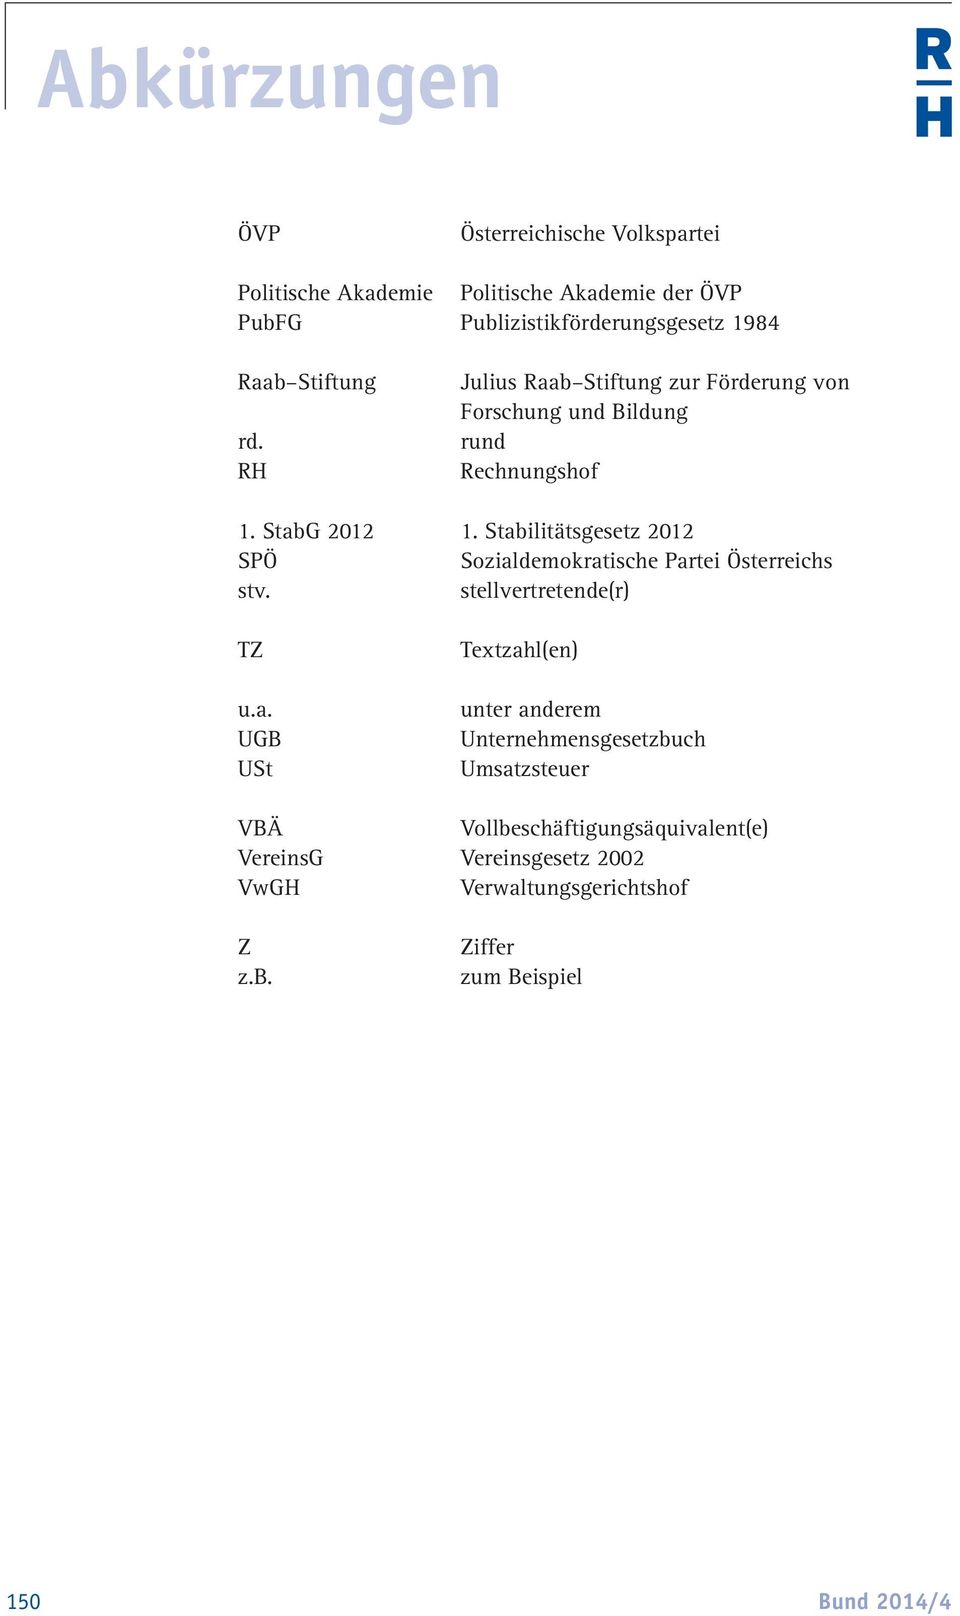 Stabilitätsgesetz 2012 SPÖ Sozialdemokratische Partei Österreichs stv. stellvertretende(r) TZ u.a. UGB USt Textzahl(en) unter anderem